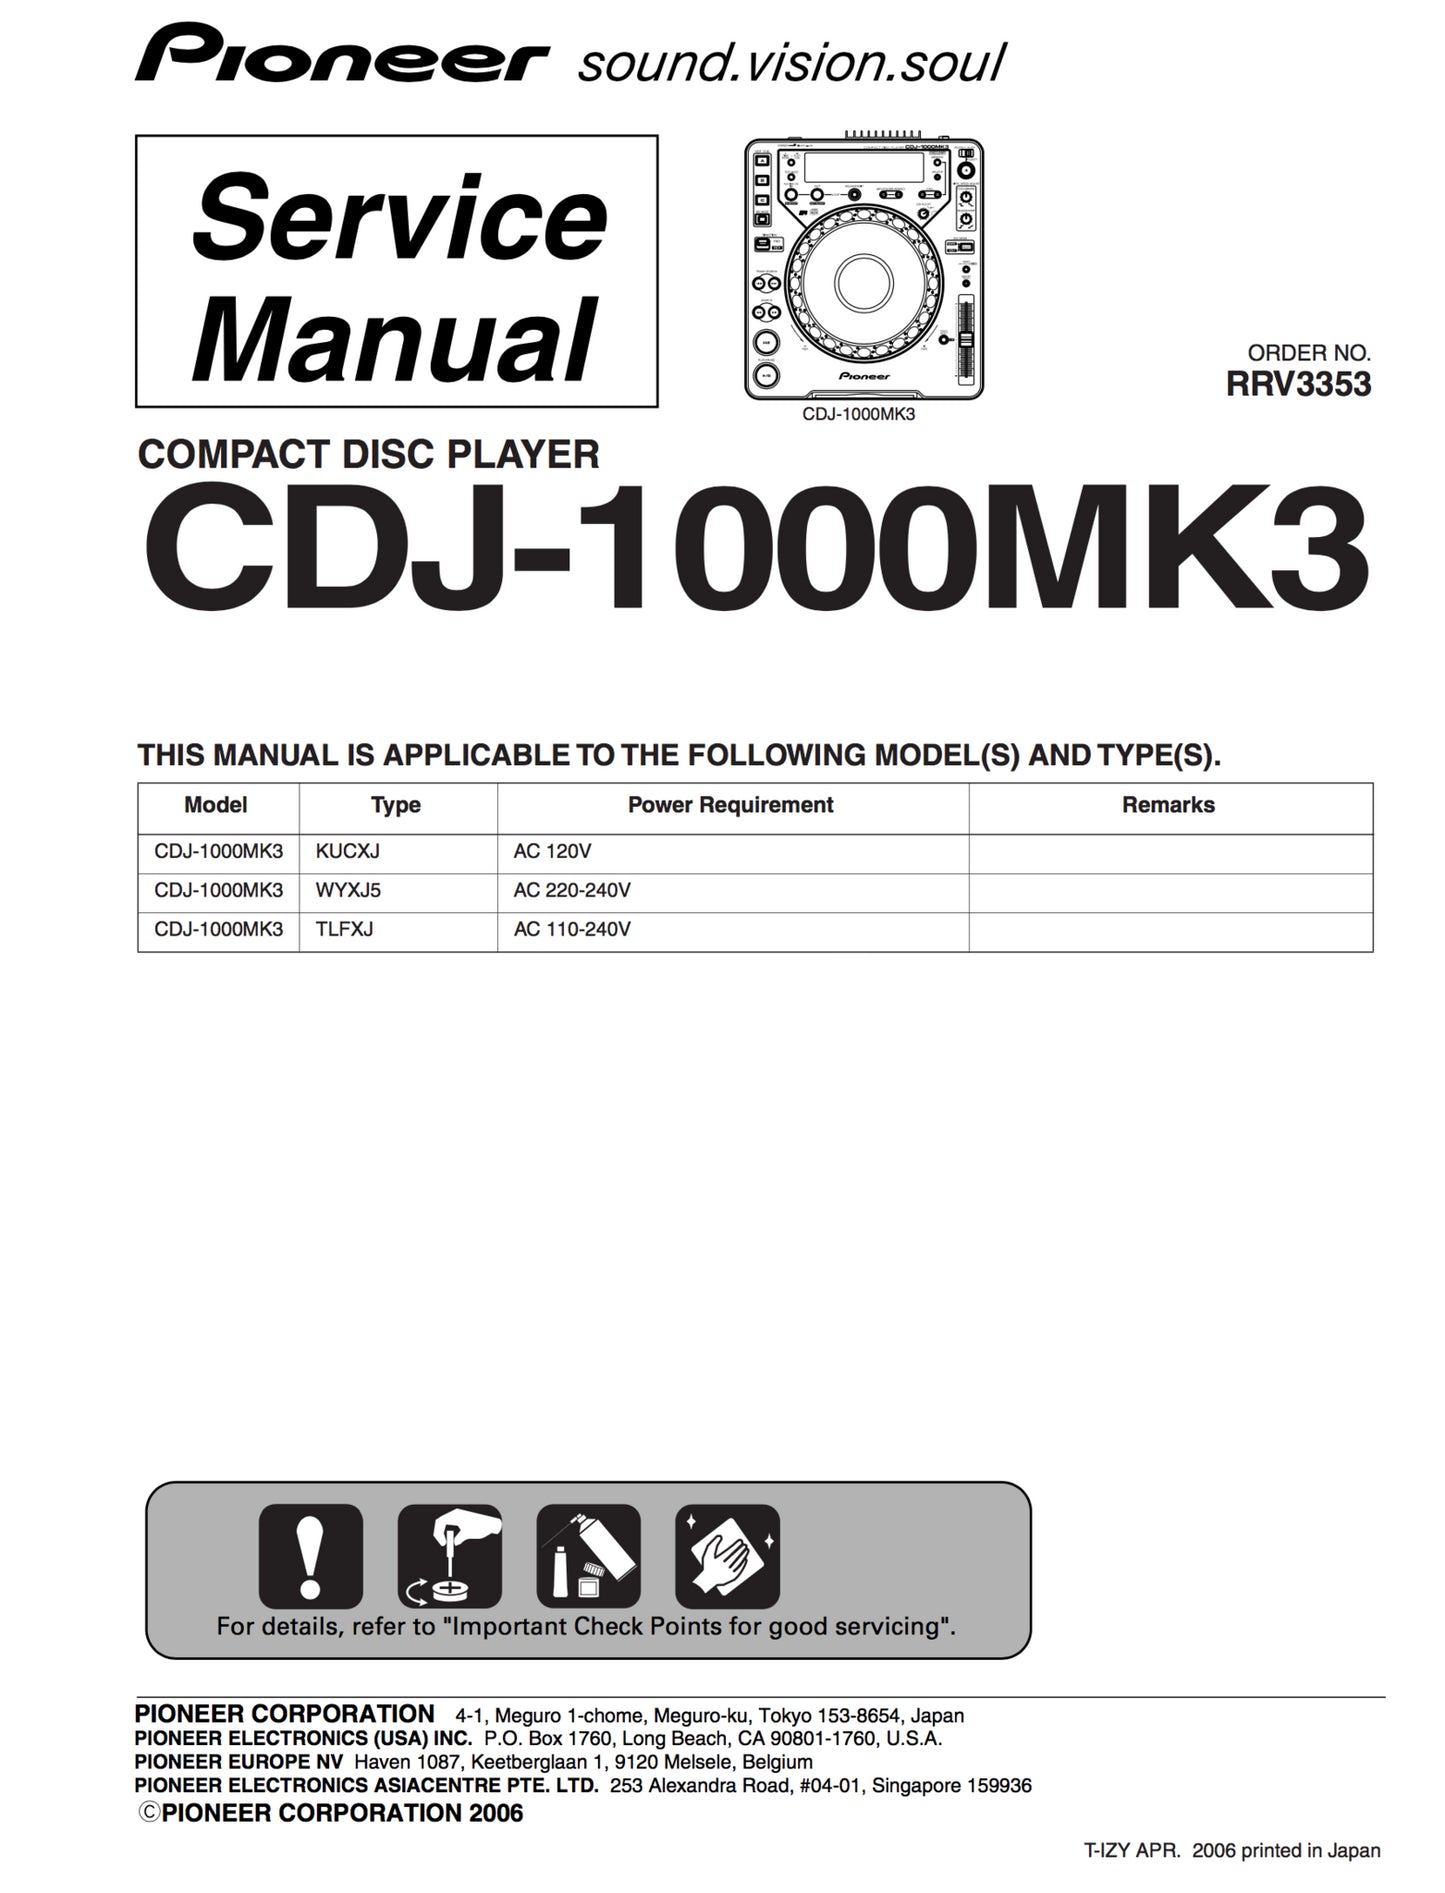 Pioneer CDJ-1000MK3 Service Manual Complete